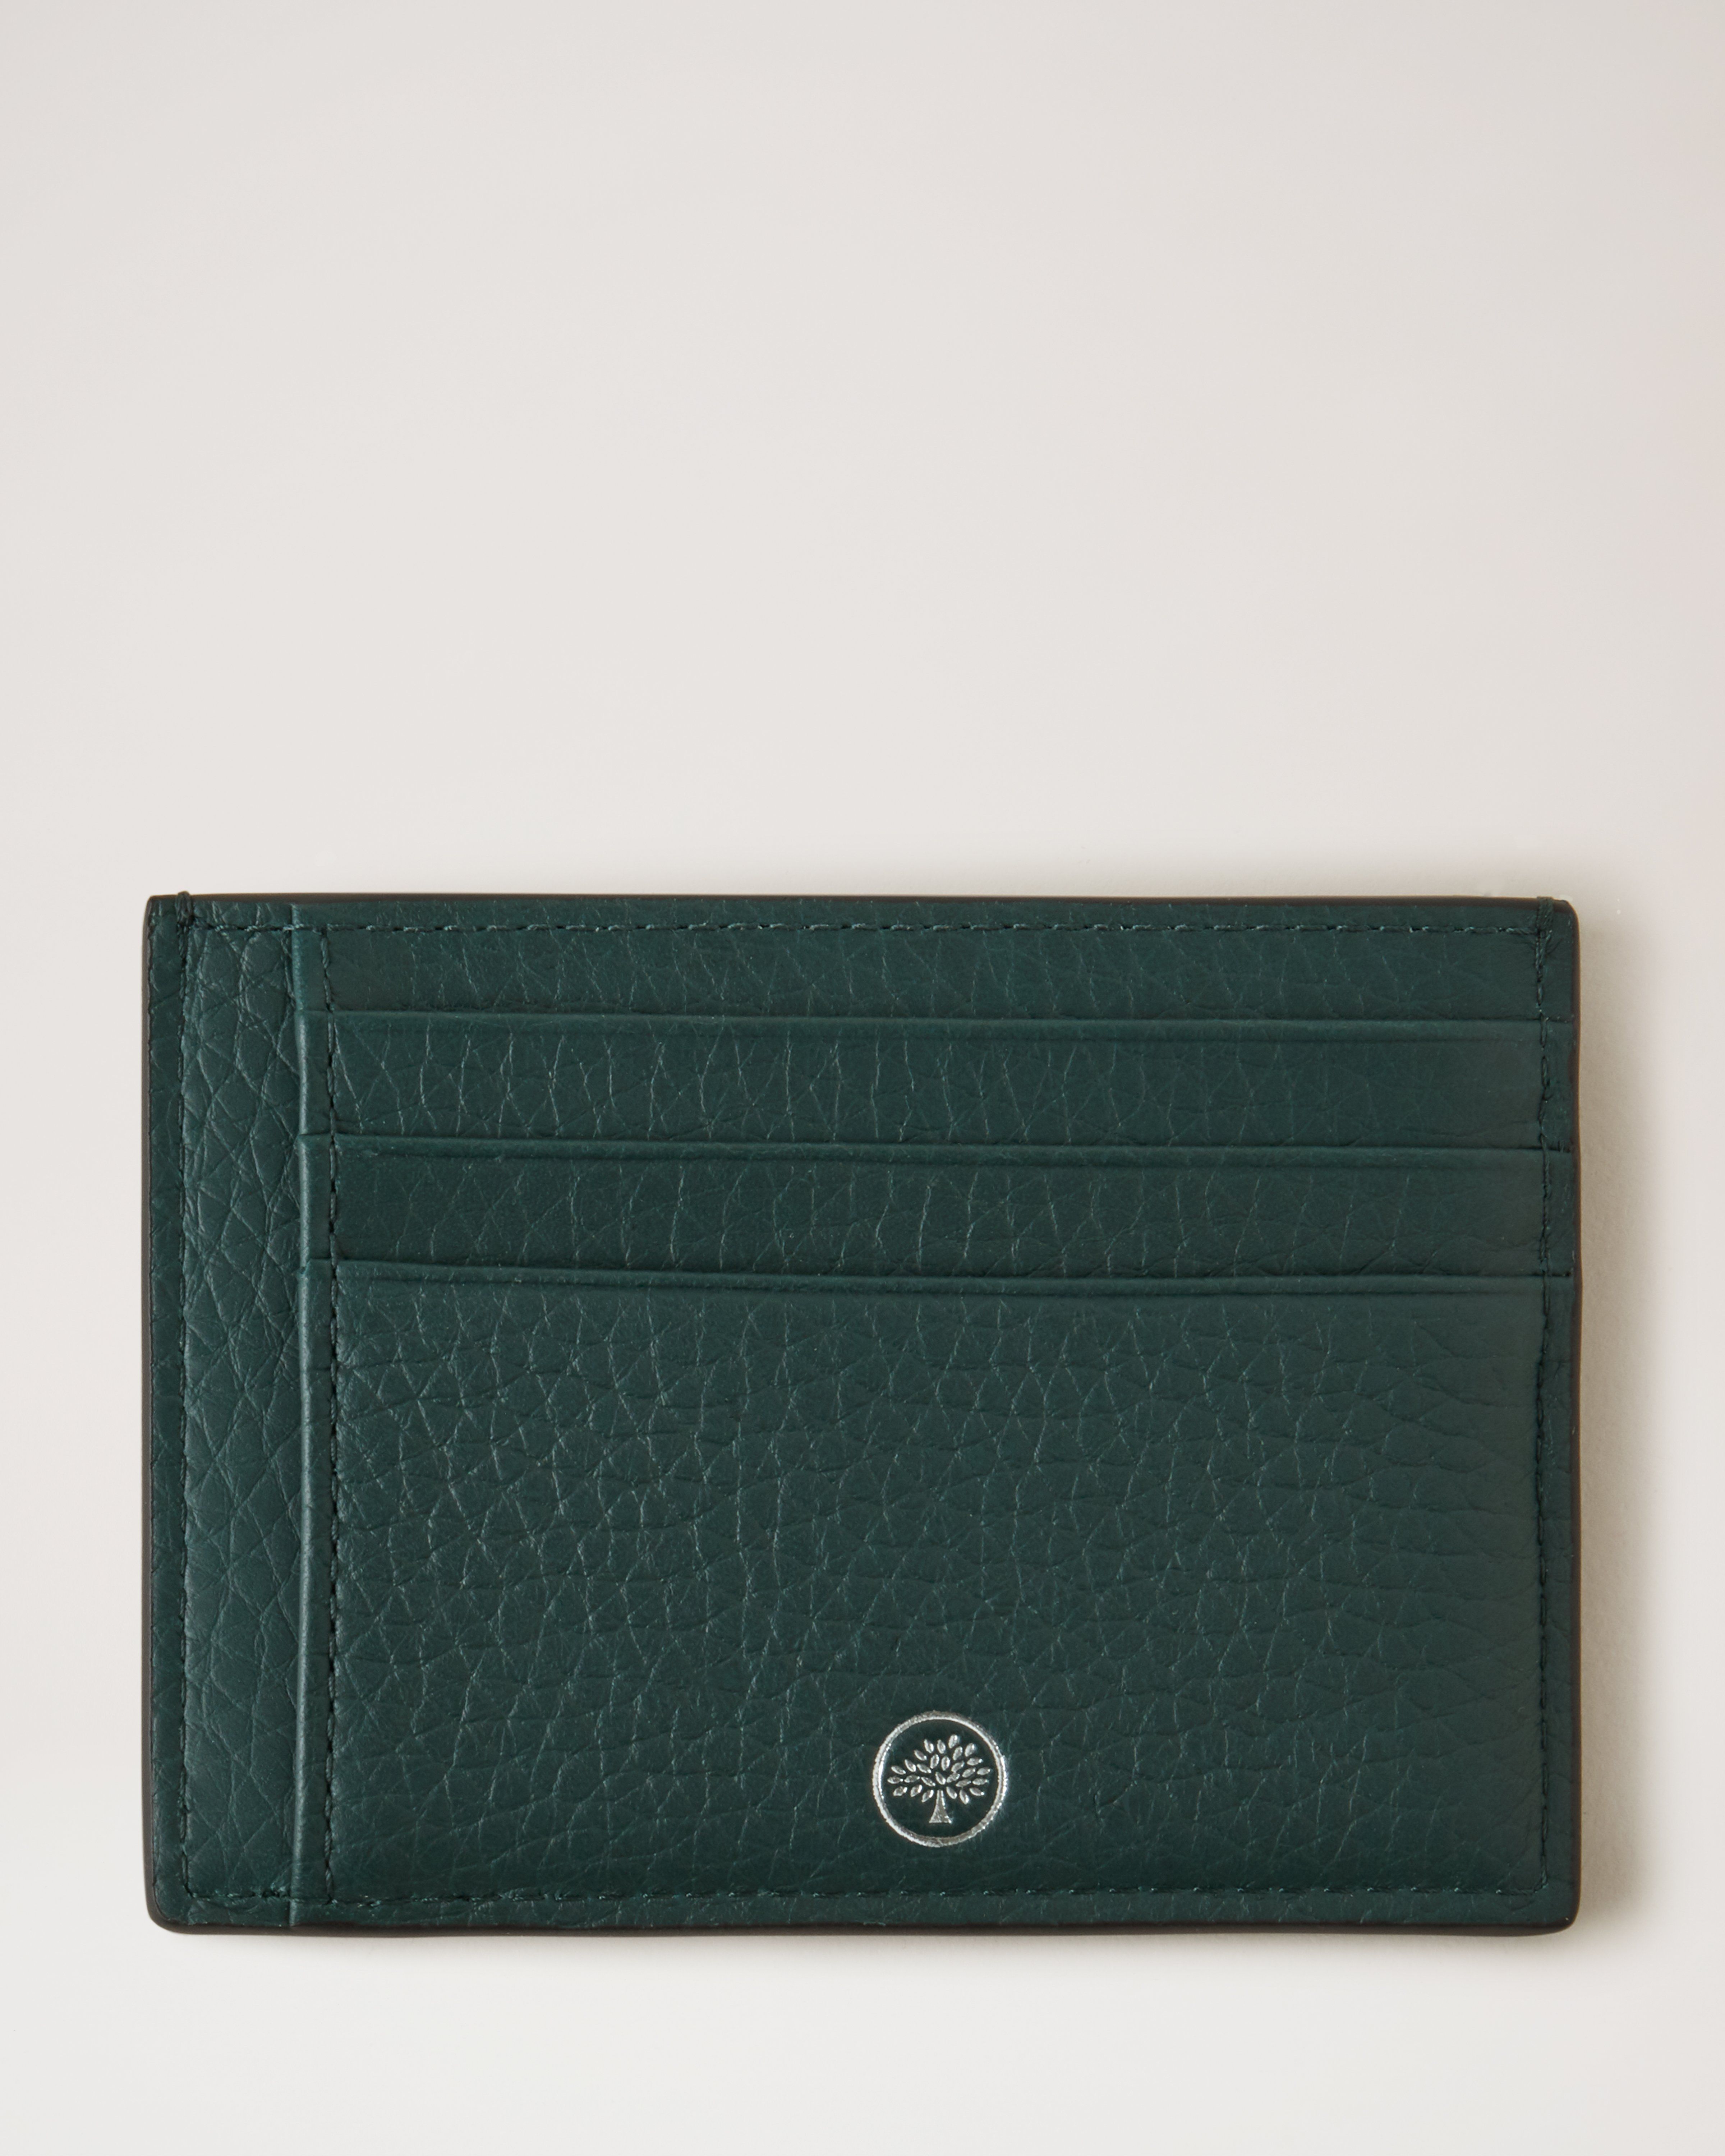 NR DESIGN Leather Green Men Designer Card Wallet, Card Slots: 4